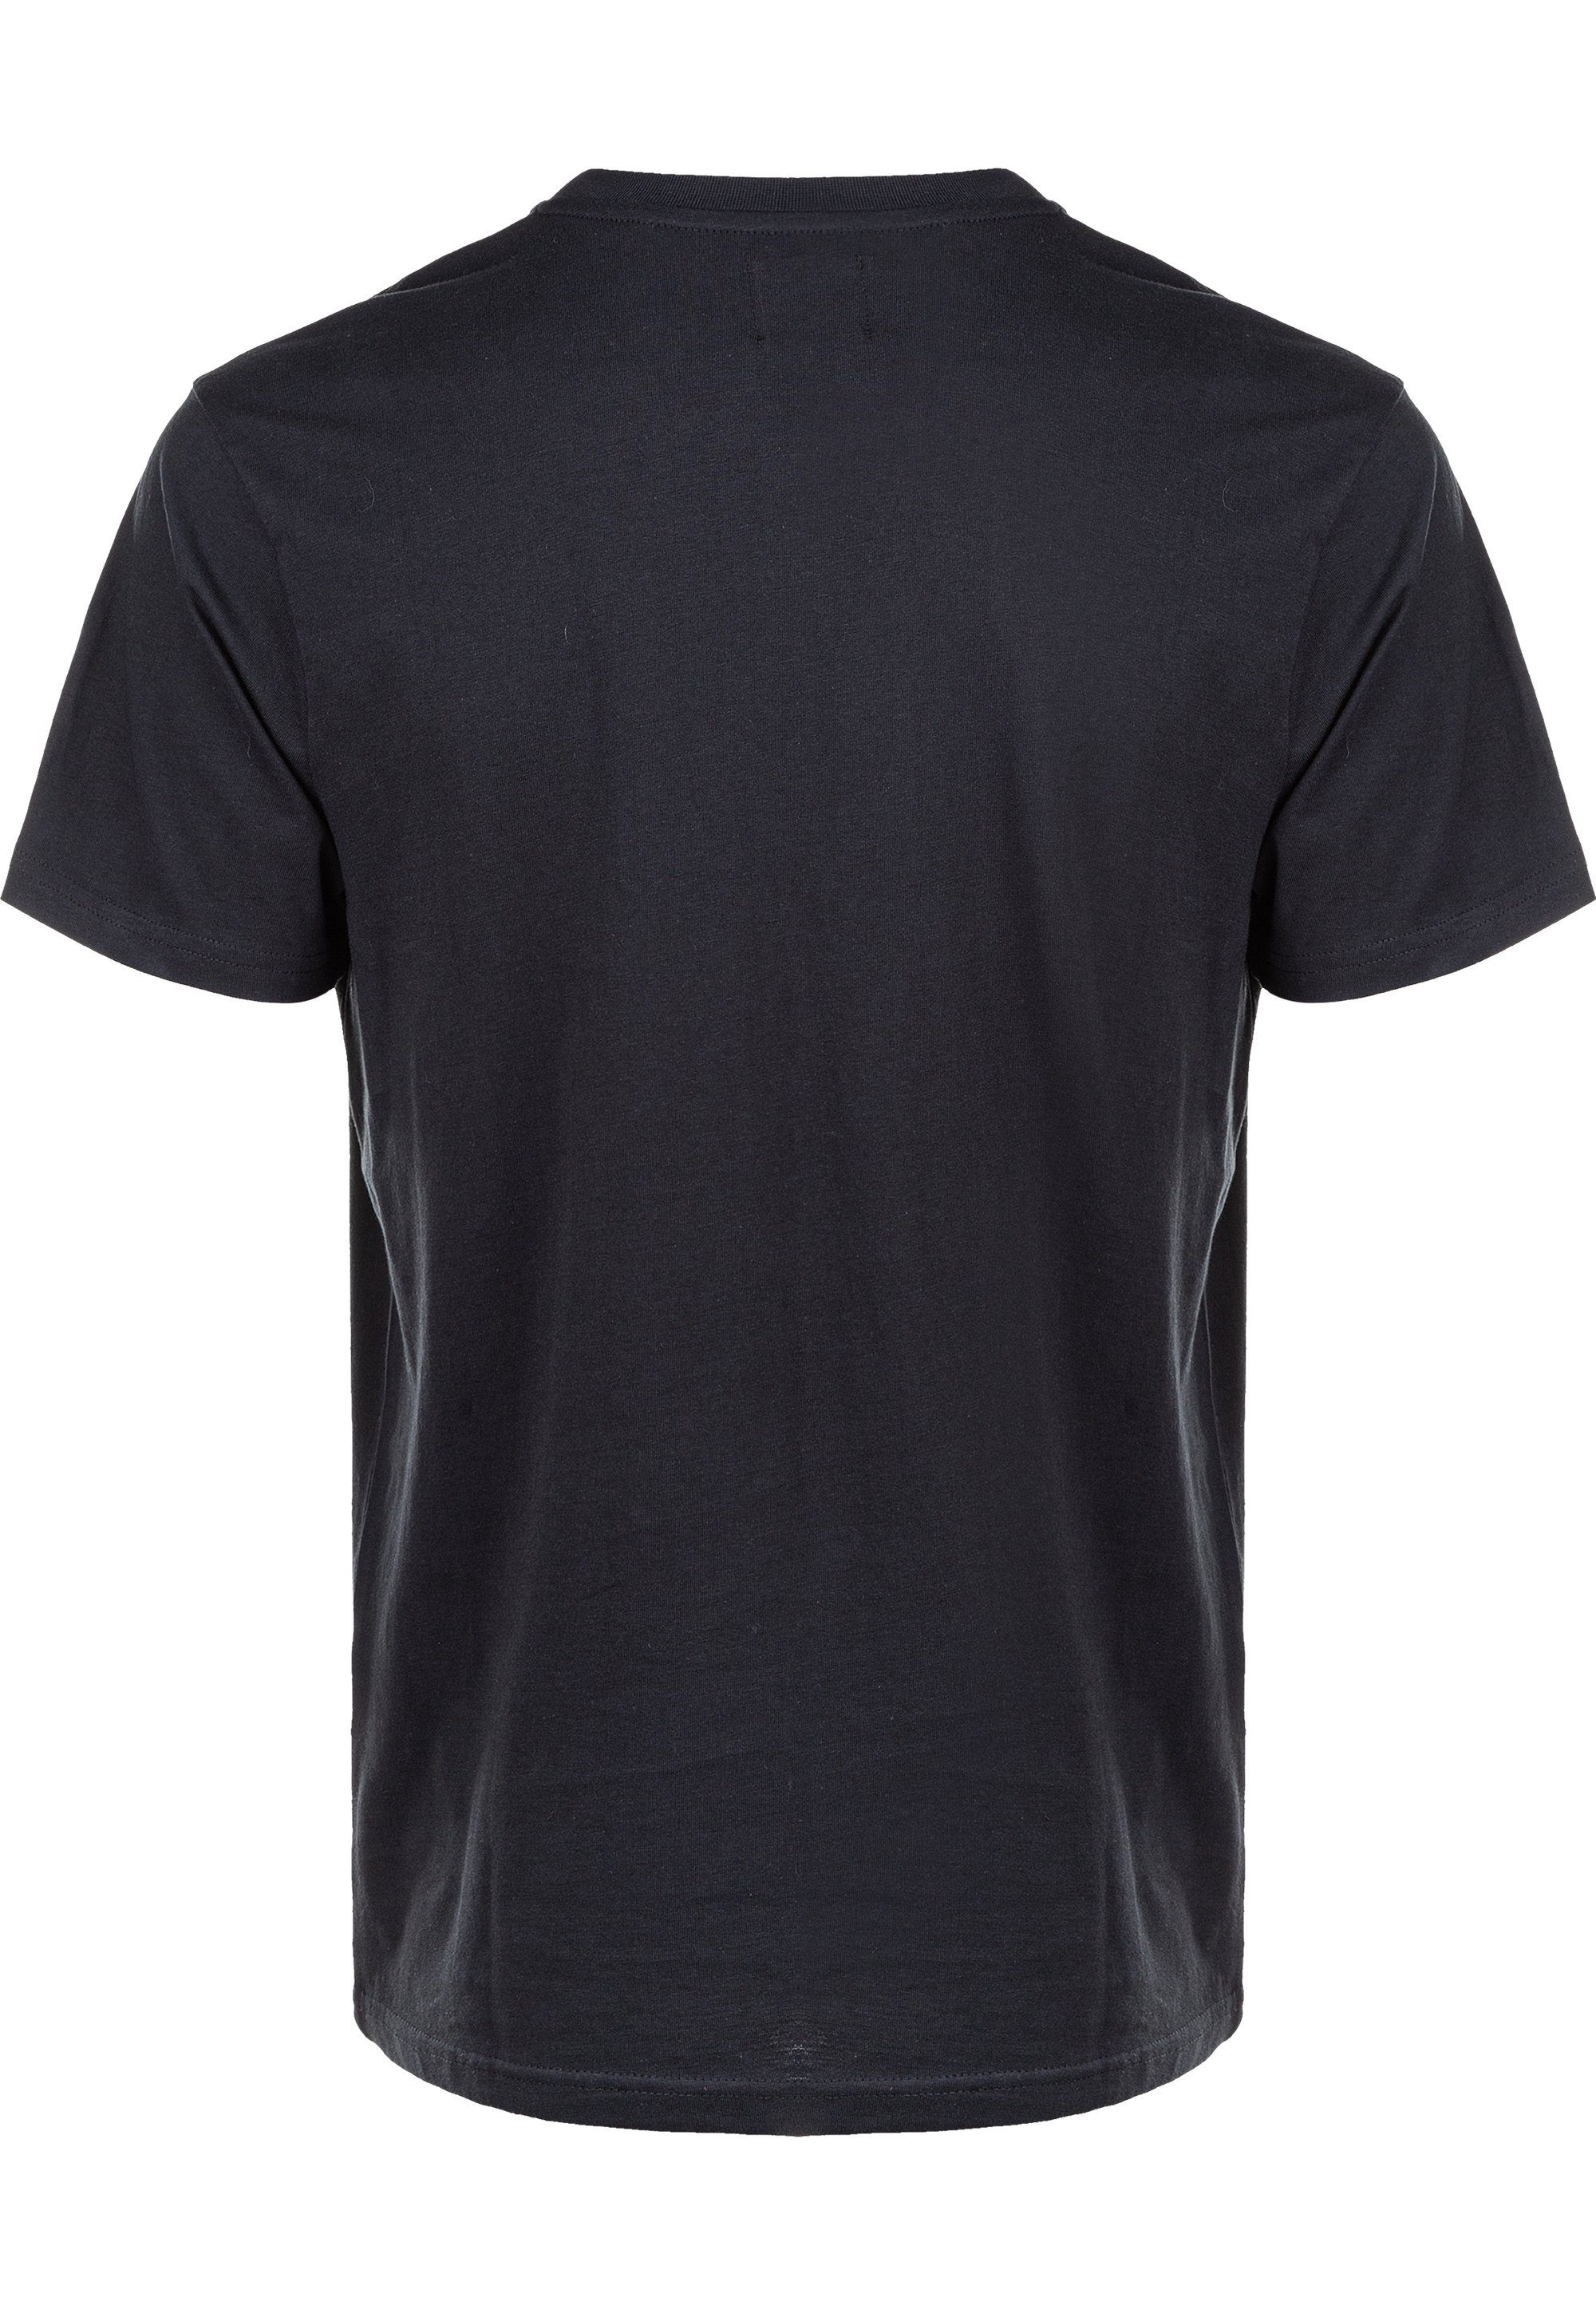 CRUZ T-Shirt reiner Highmore schwarz Baumwolle aus